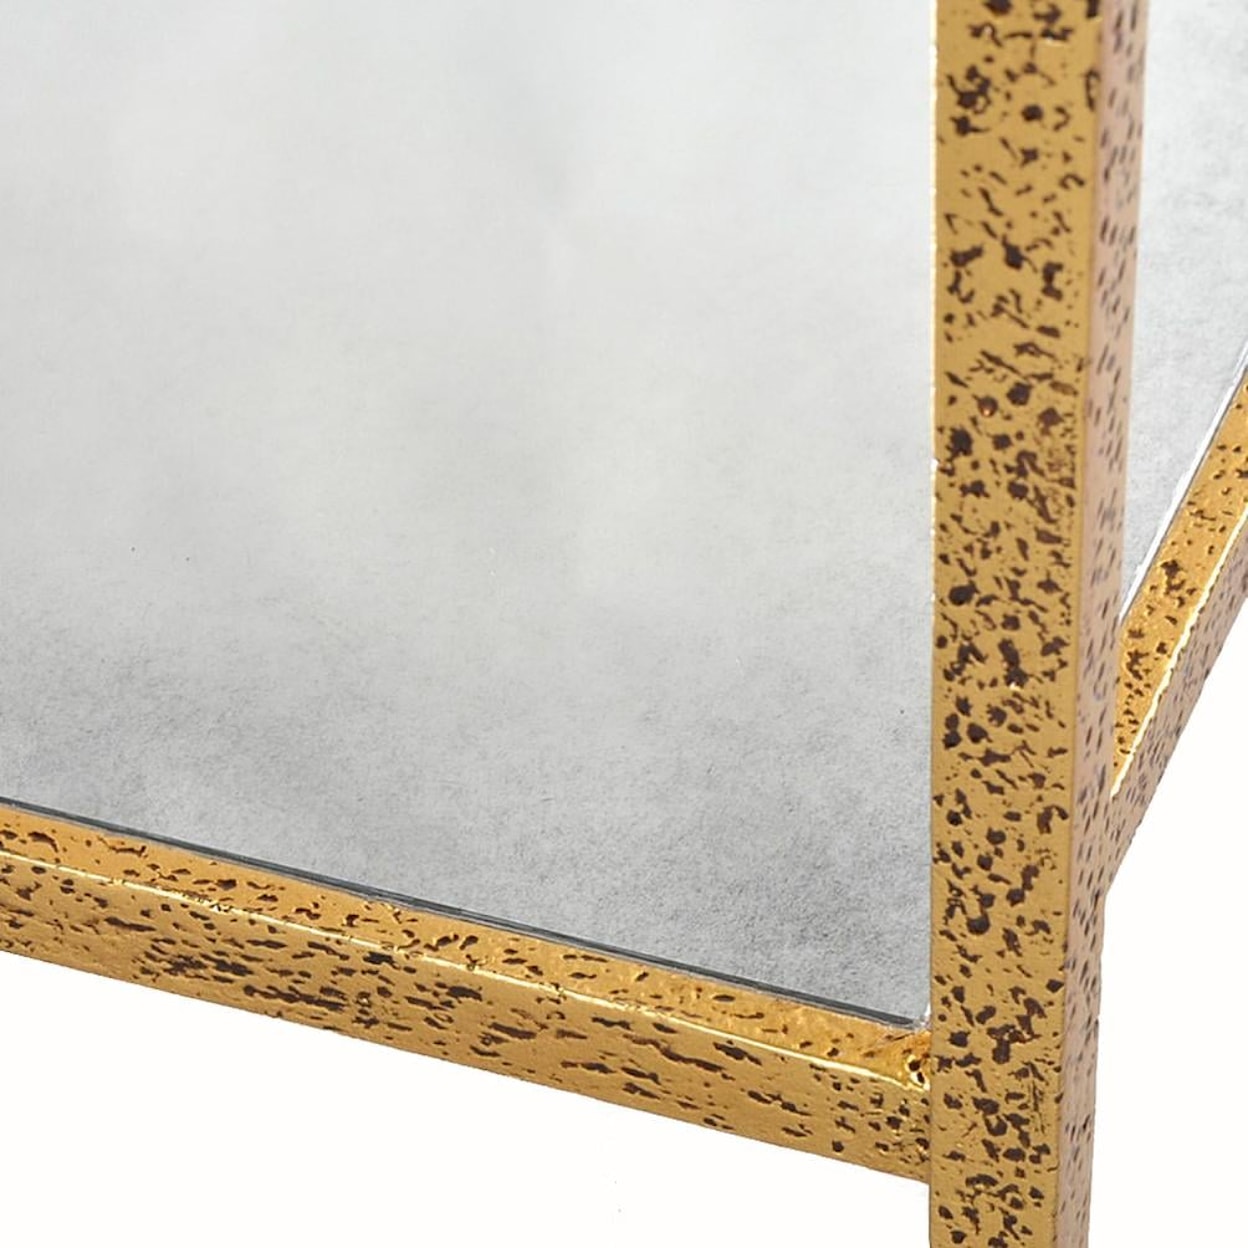 Oliver Home Furnishings End/ Side Tables RECTANGLE GOLD LEAF SIDE TABLE